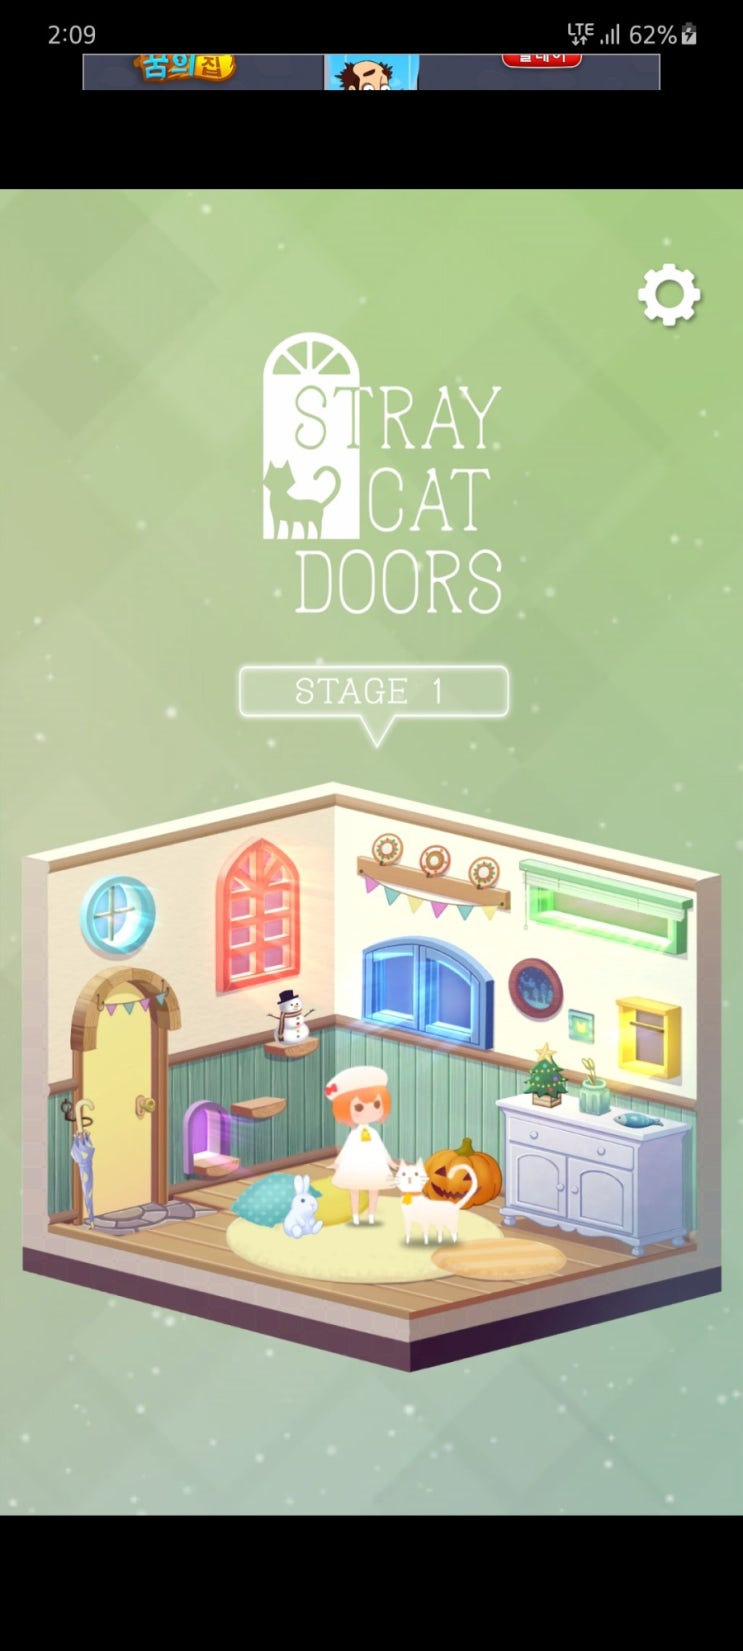 [핸드폰 게임] 'stray cat doors' /탈출게임 길잃은 고양이의 여행/ 공략 보너스 게임